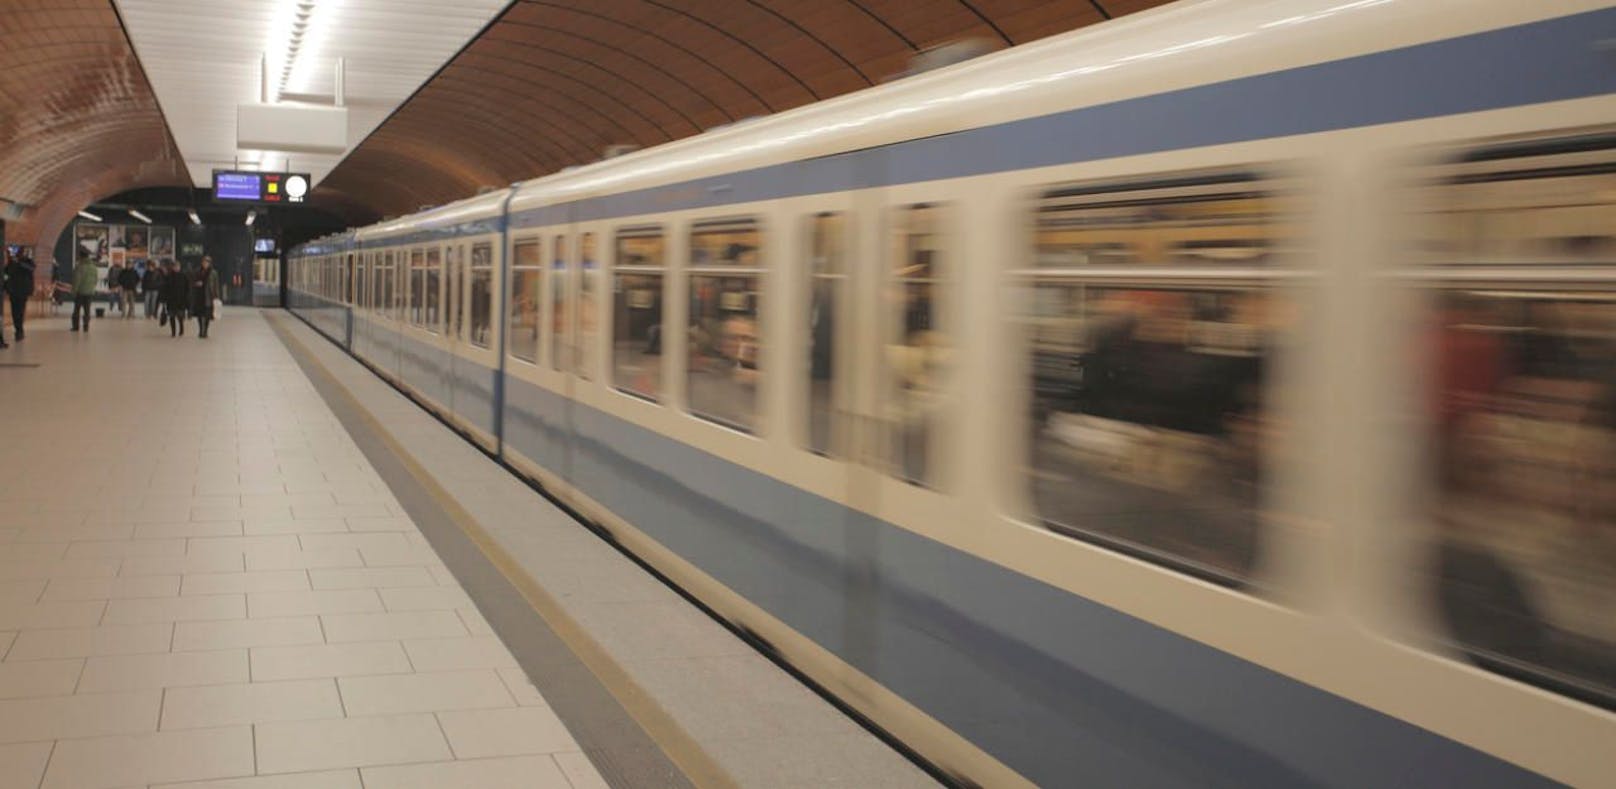 Die beiden Jugendlichen wurde in einer U-Bahn in München begrapscht